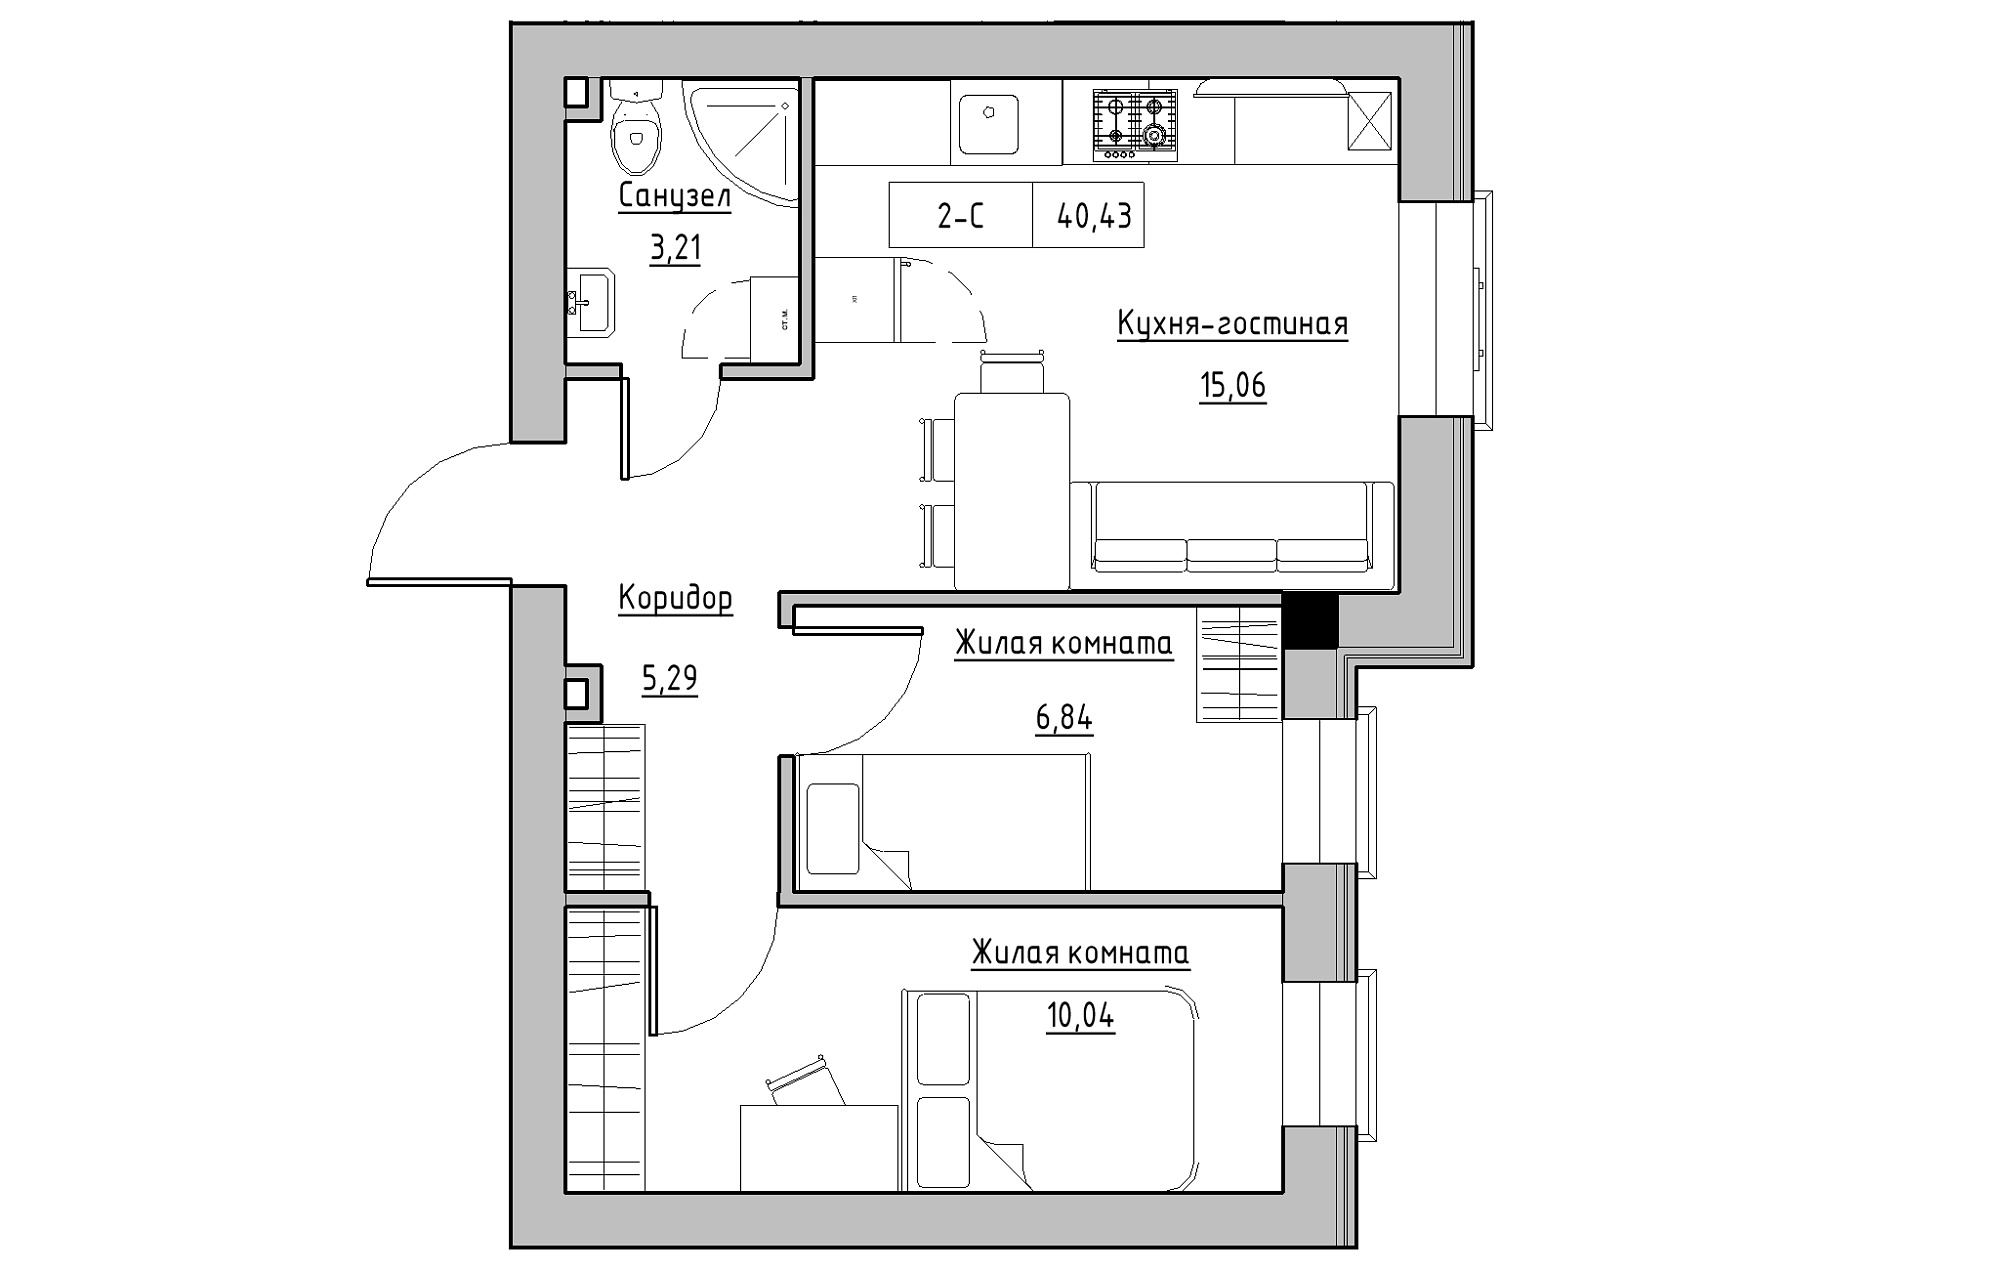 Планировка 2-к квартира площей 40.43м2, KS-018-01/0010.